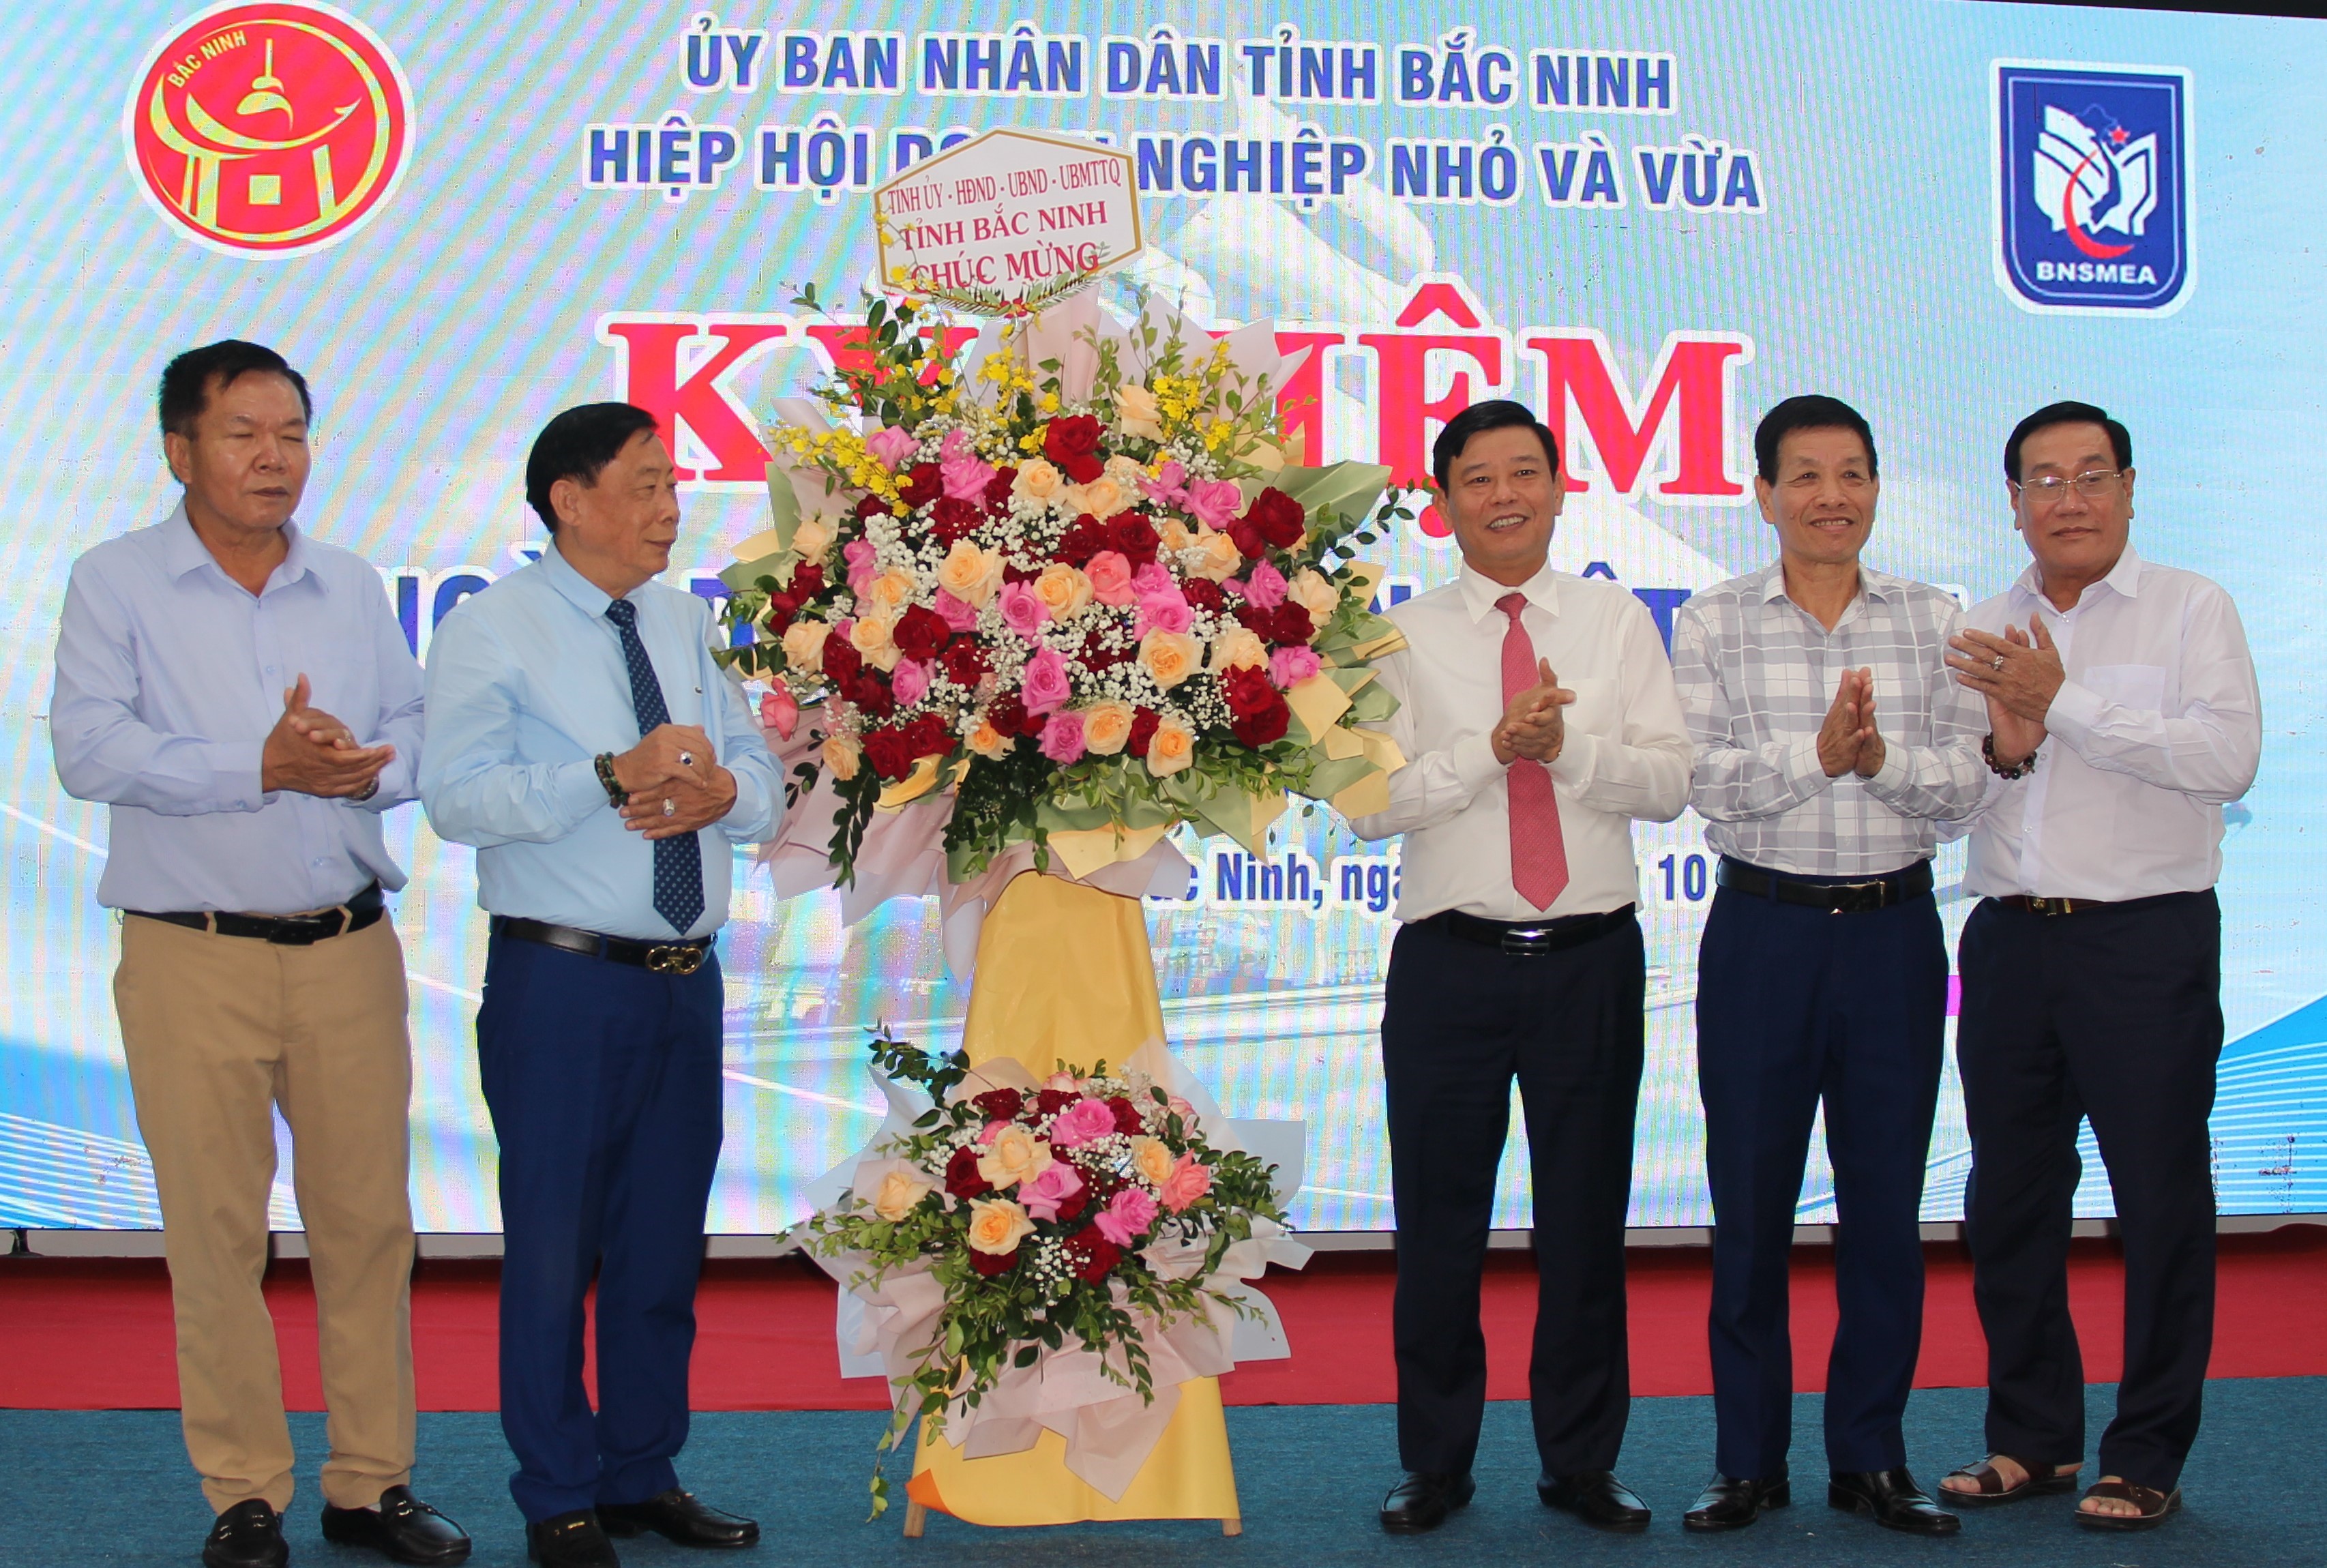 Hiệp hội Doanh nghiệp nhỏ và vừa tỉnh kỷ niệm Ngày Doanh nhân Việt Nam